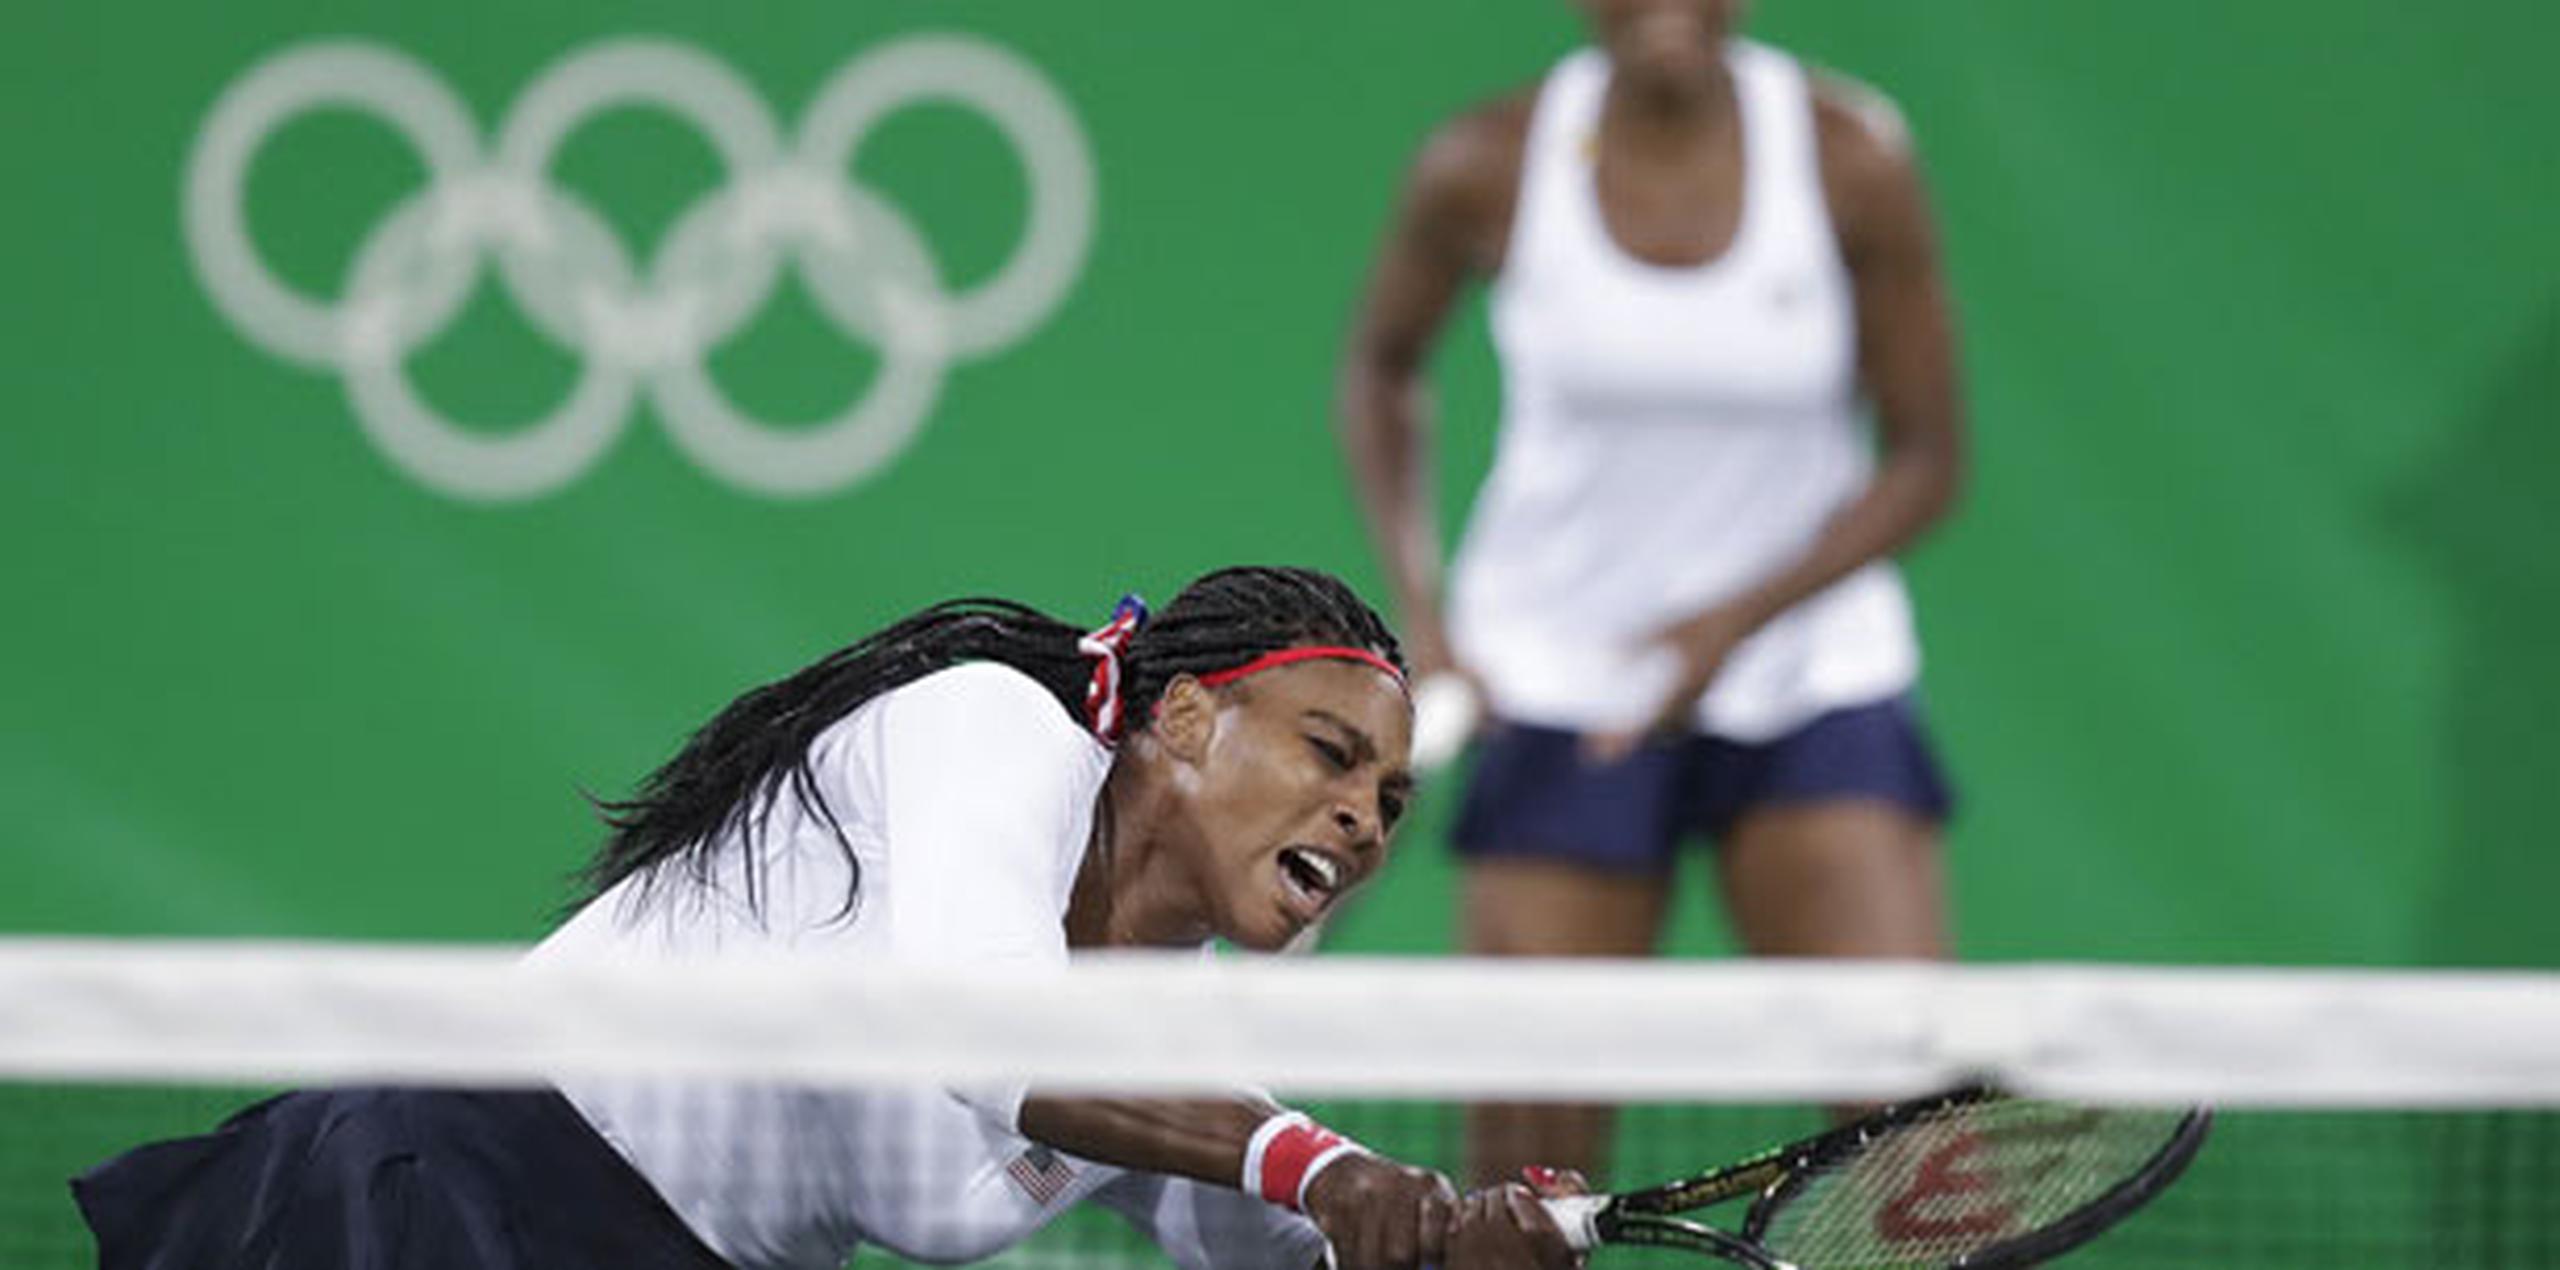 Las hermanas Williams llegaron al partido del domingo con una foja de 15-0 en su carrera en dobles en los Olímpicos. (AP/Charles Krupa)